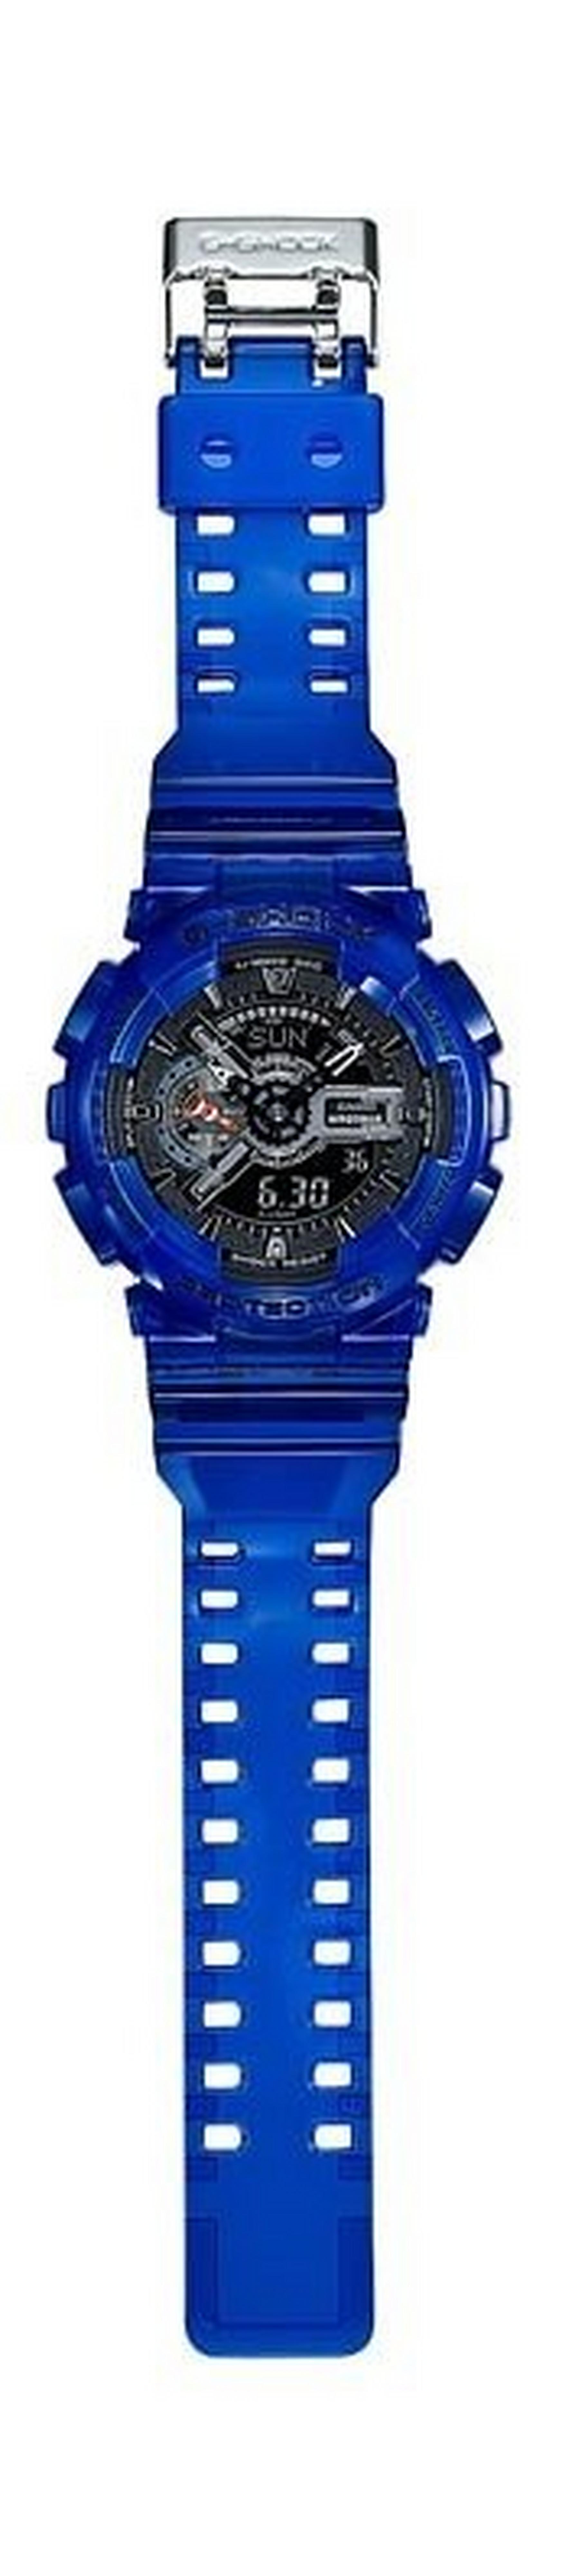 ساعة كاسيو جي شوك الرياضية - أزرق (GA-110CR-2ADR)